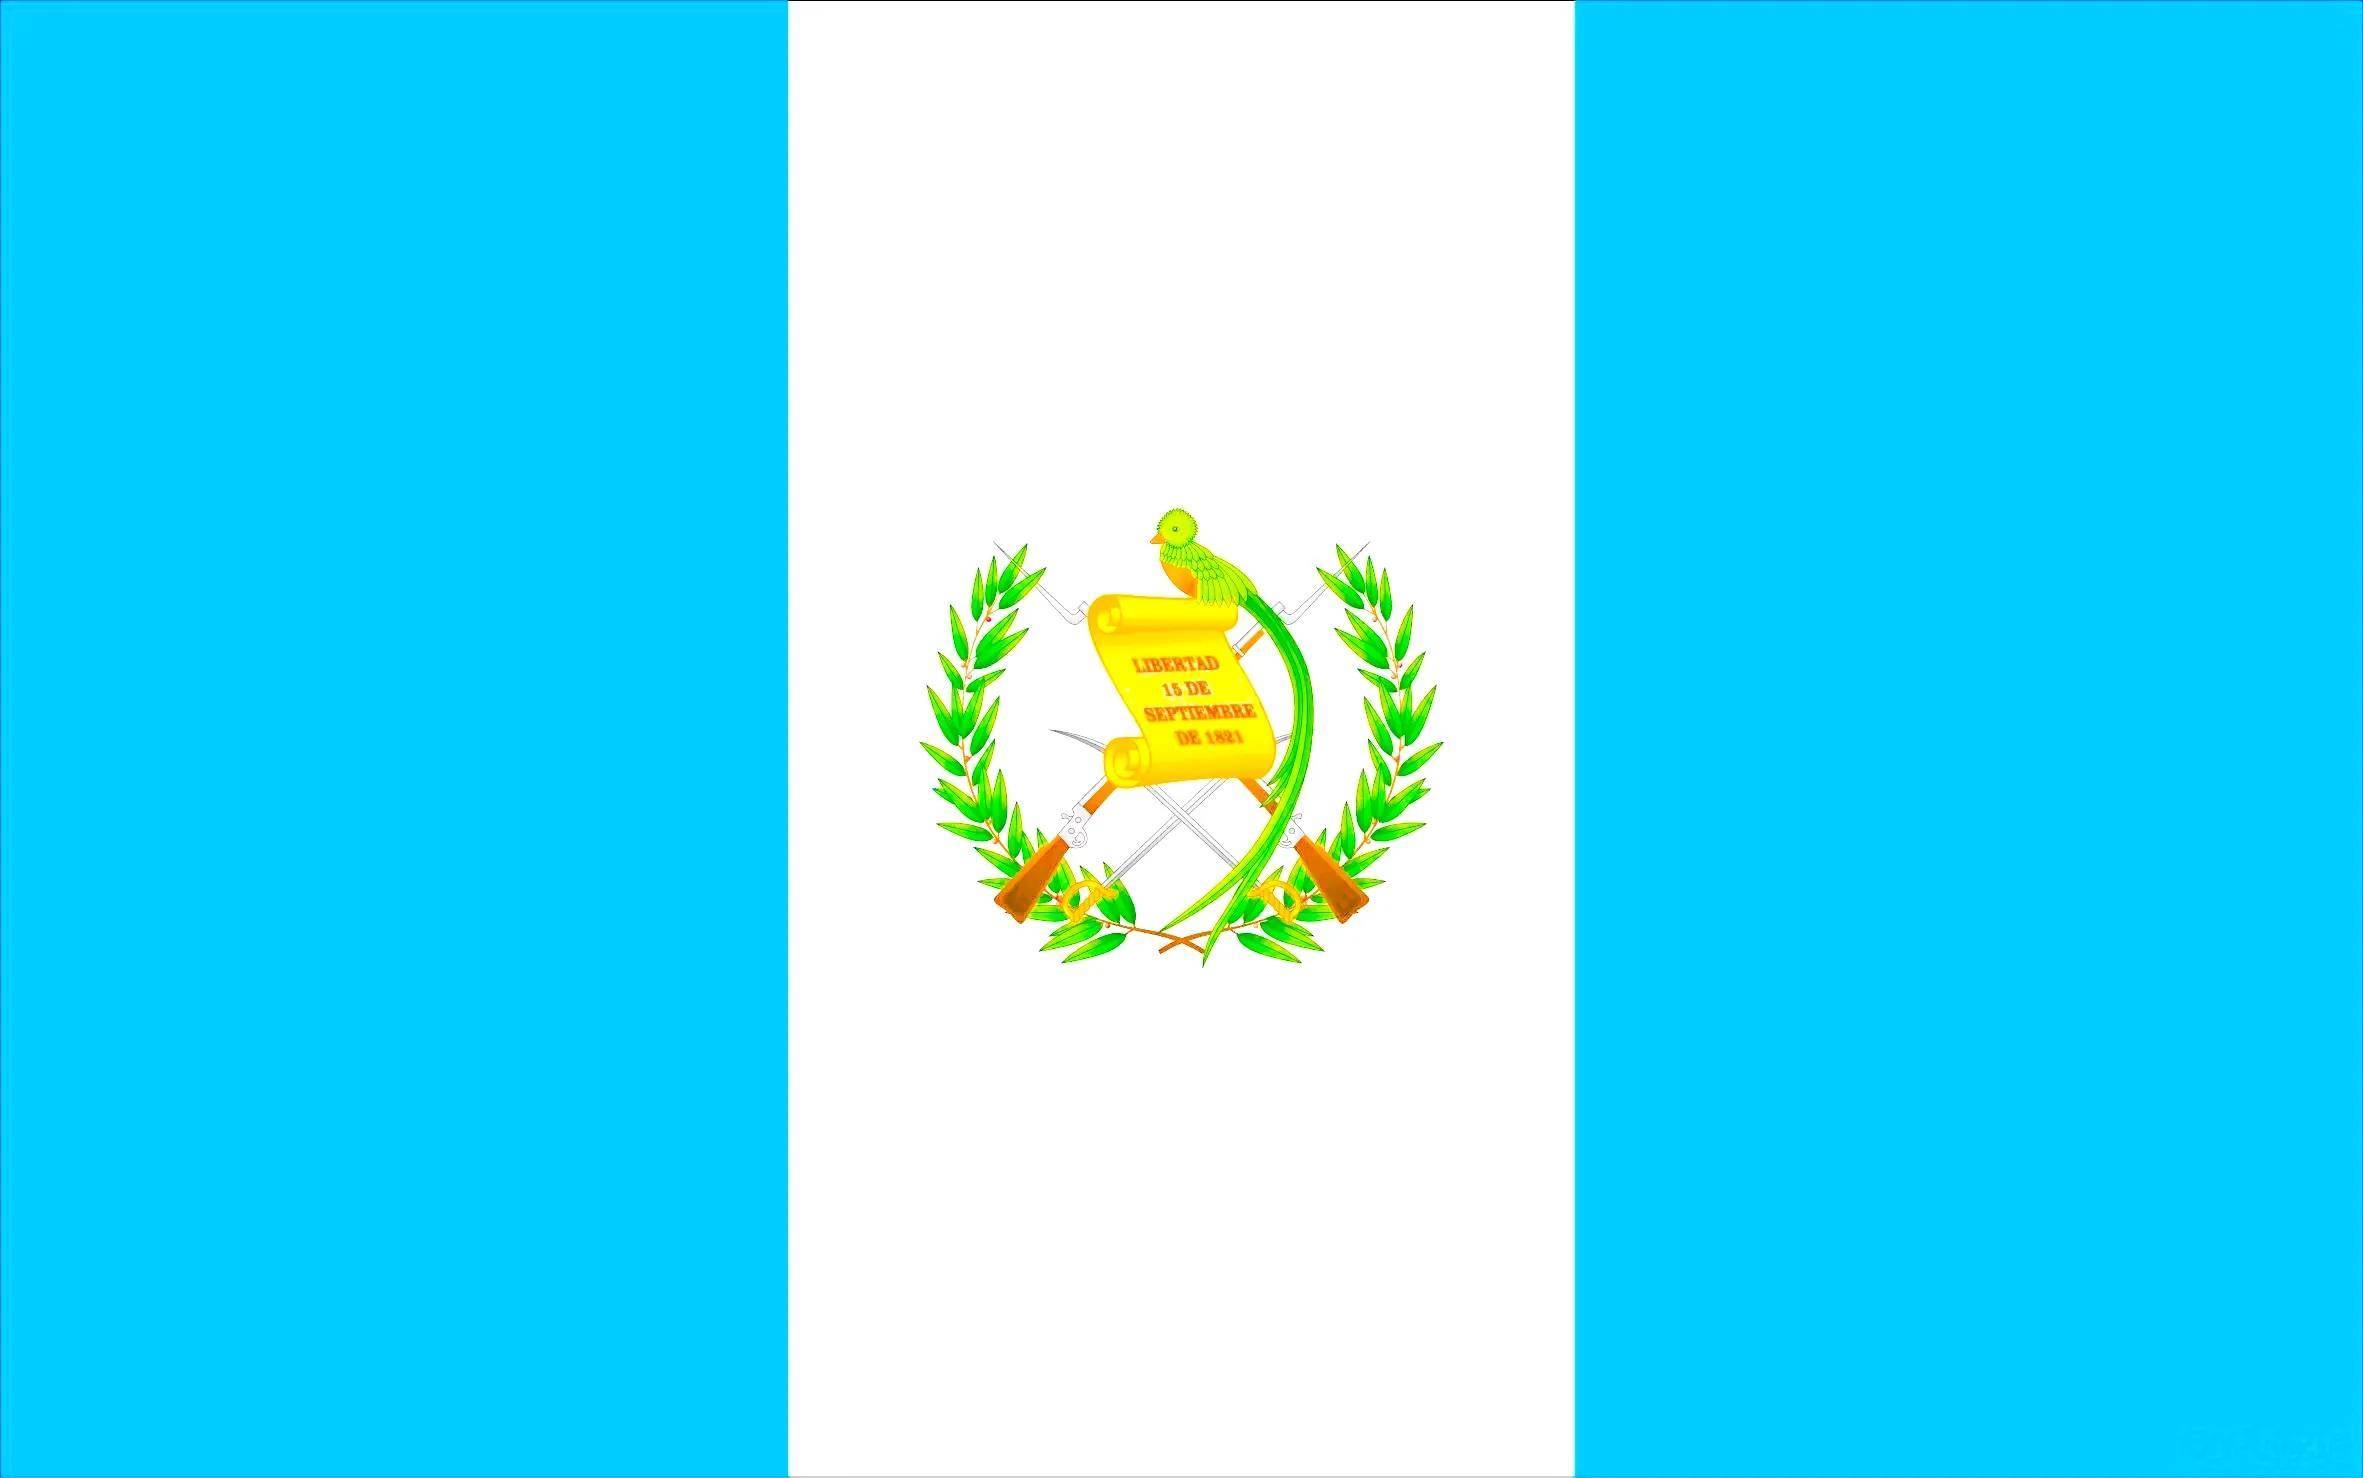 南美洲国家国徽图片